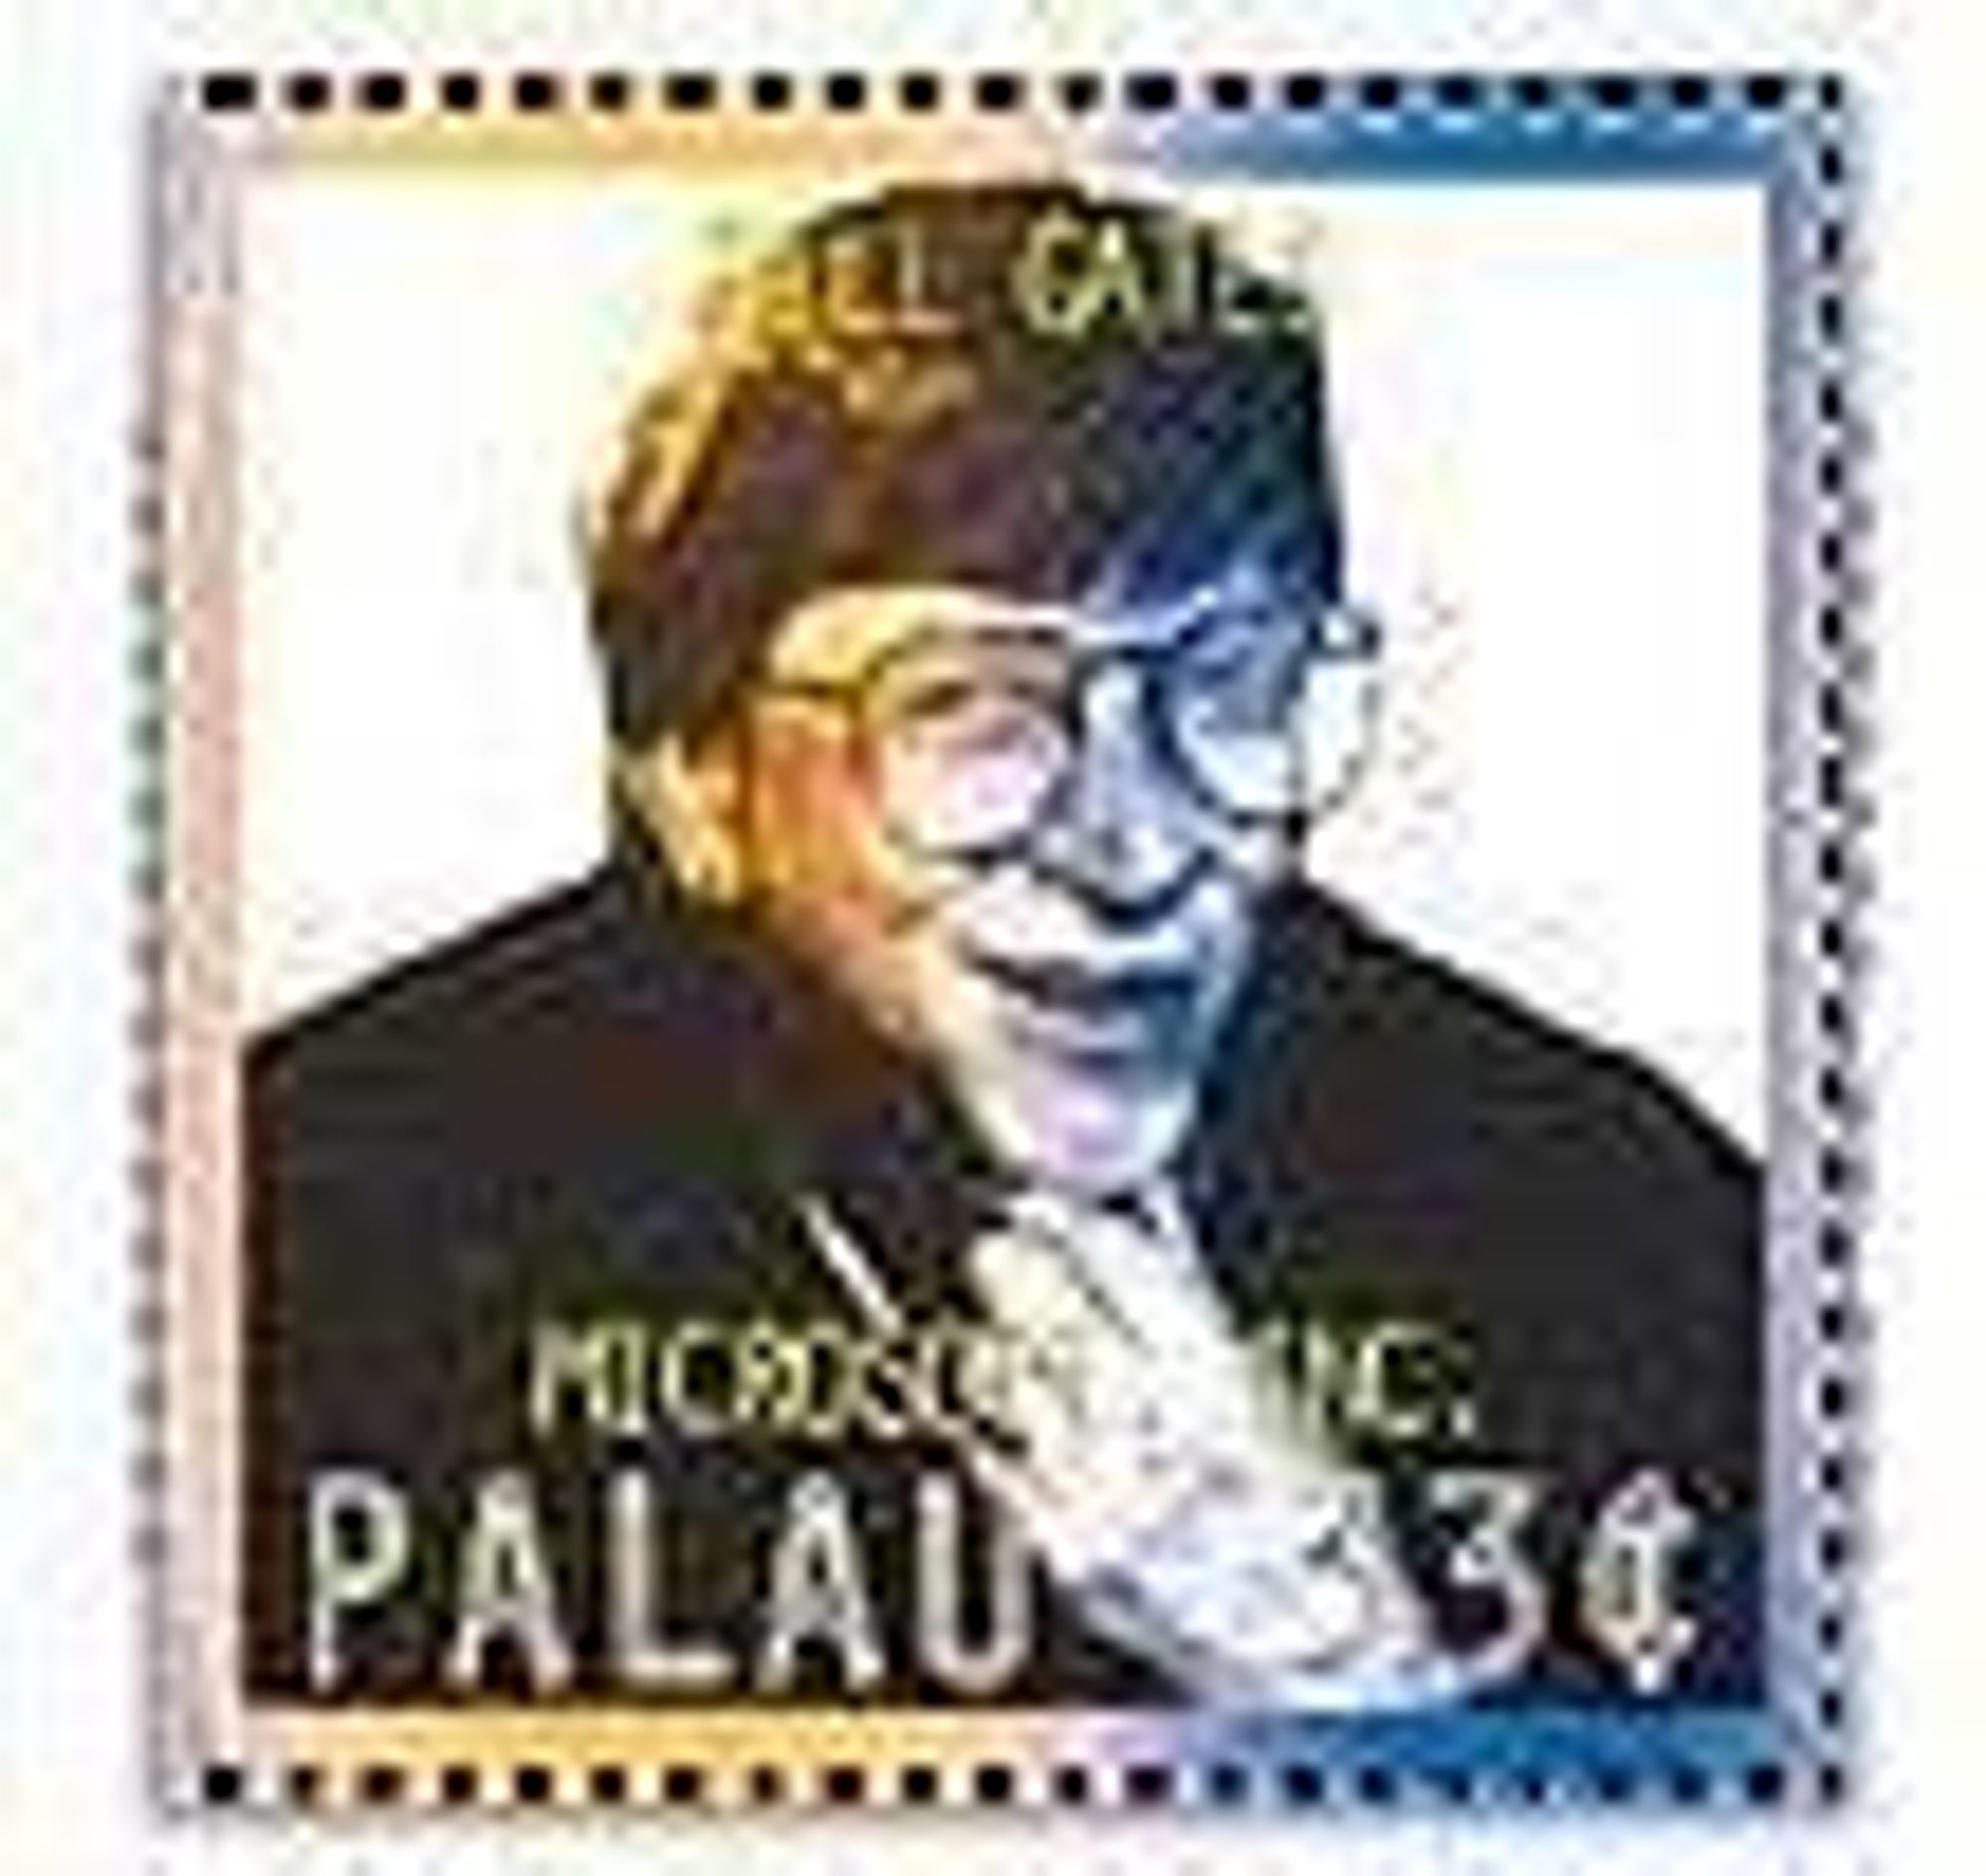 Bill Gates-frimerke utgitt i Palau.